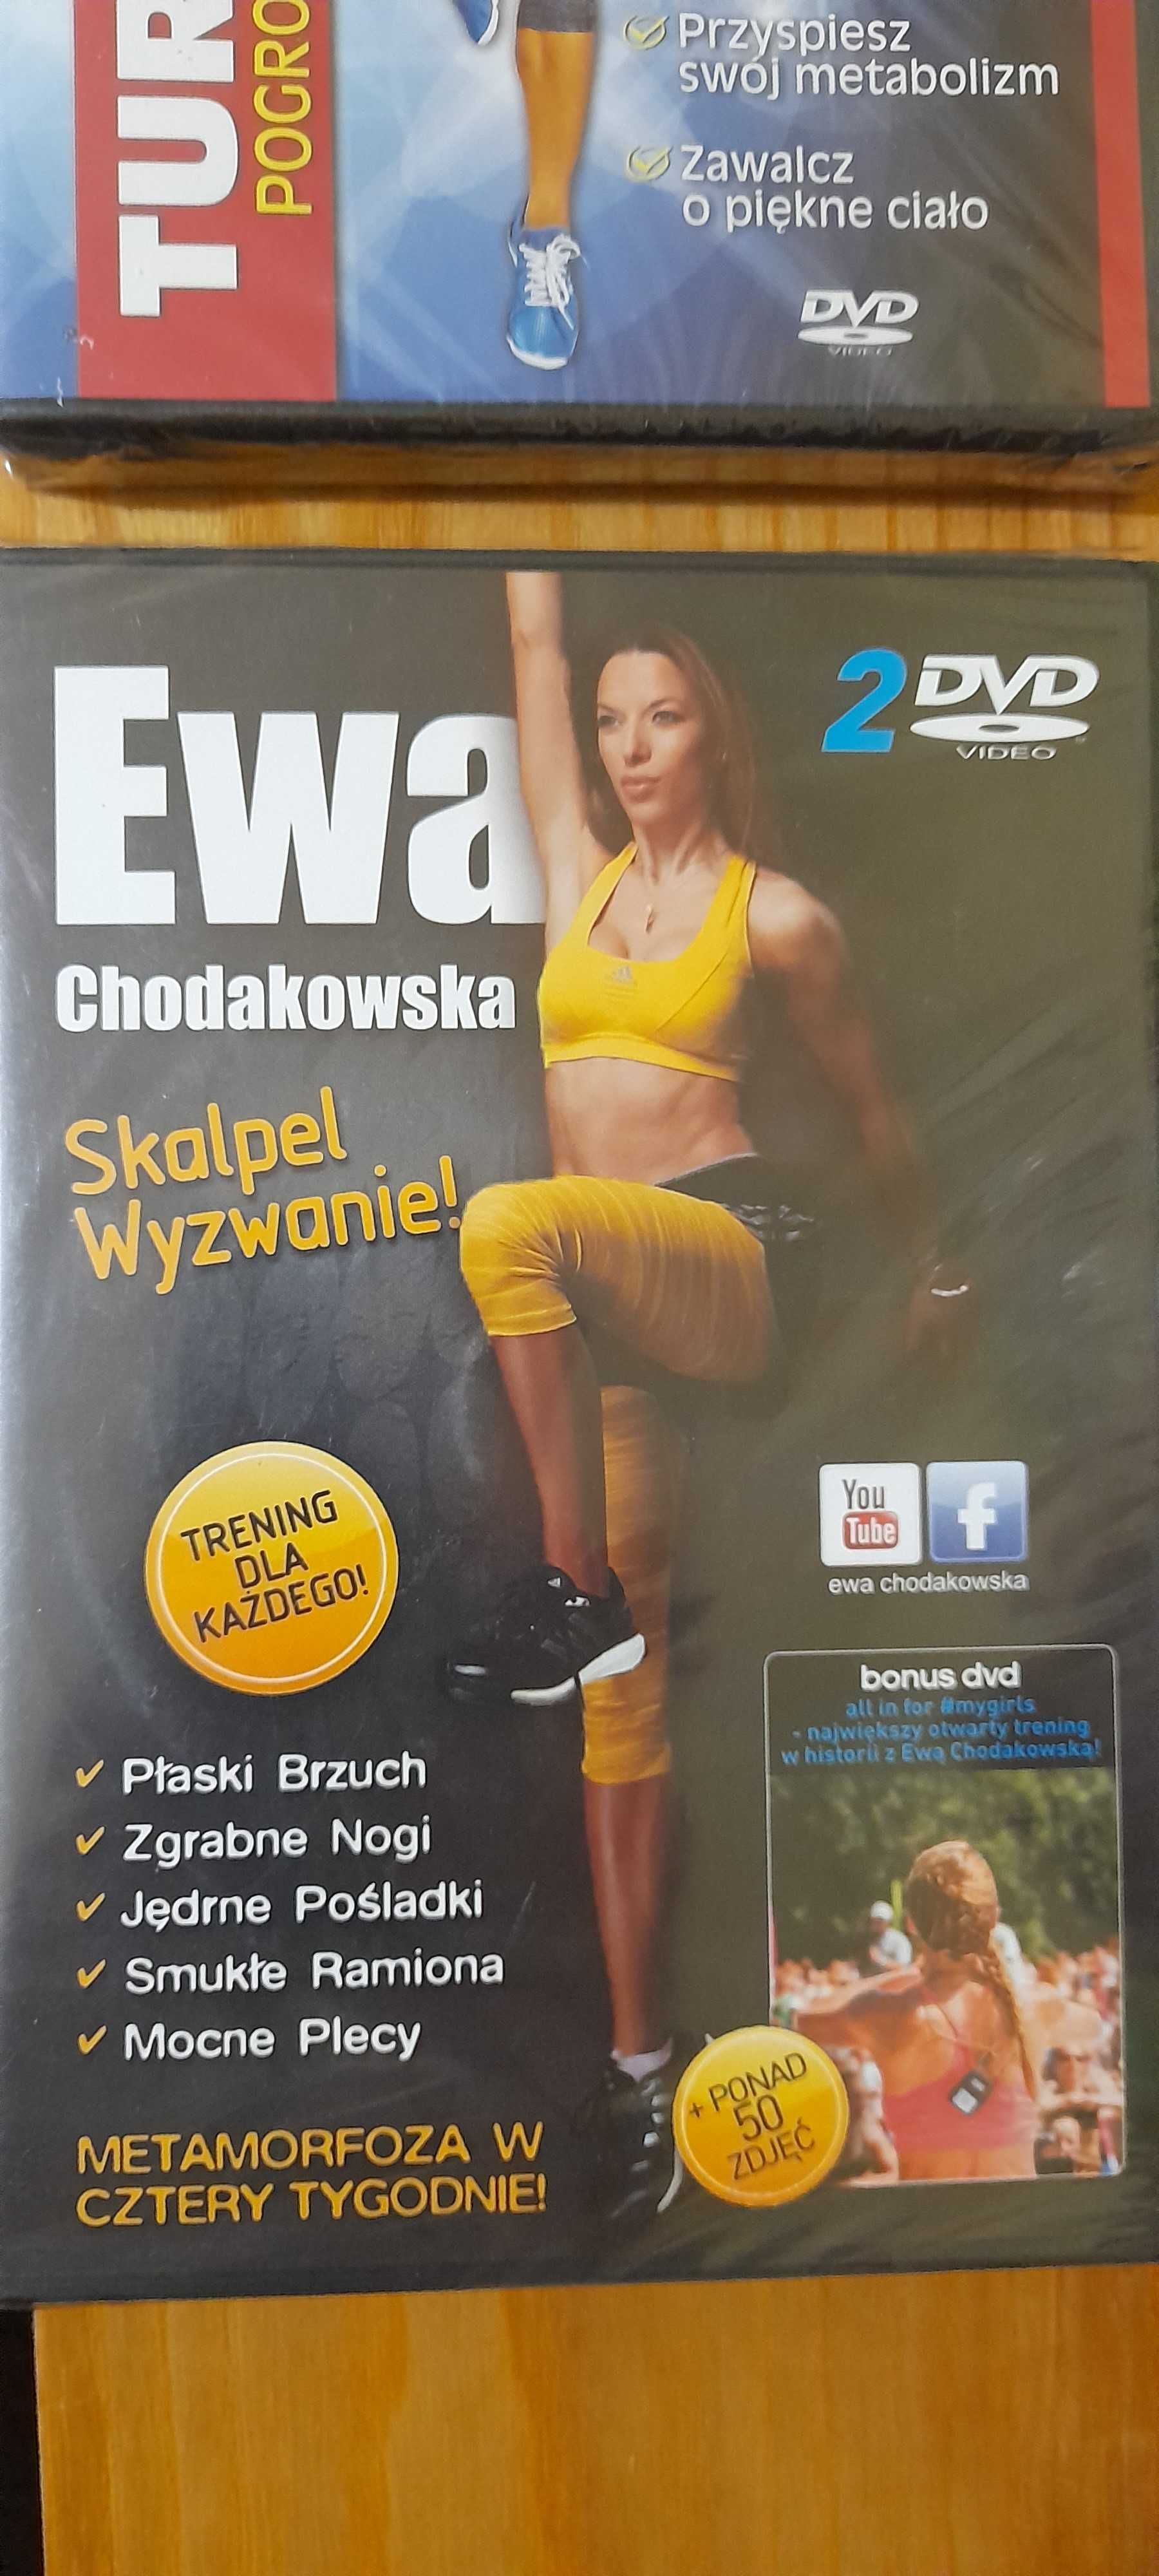 Ewa Chodakowska ćwicz i chudnij - postanowienie na nowy rok